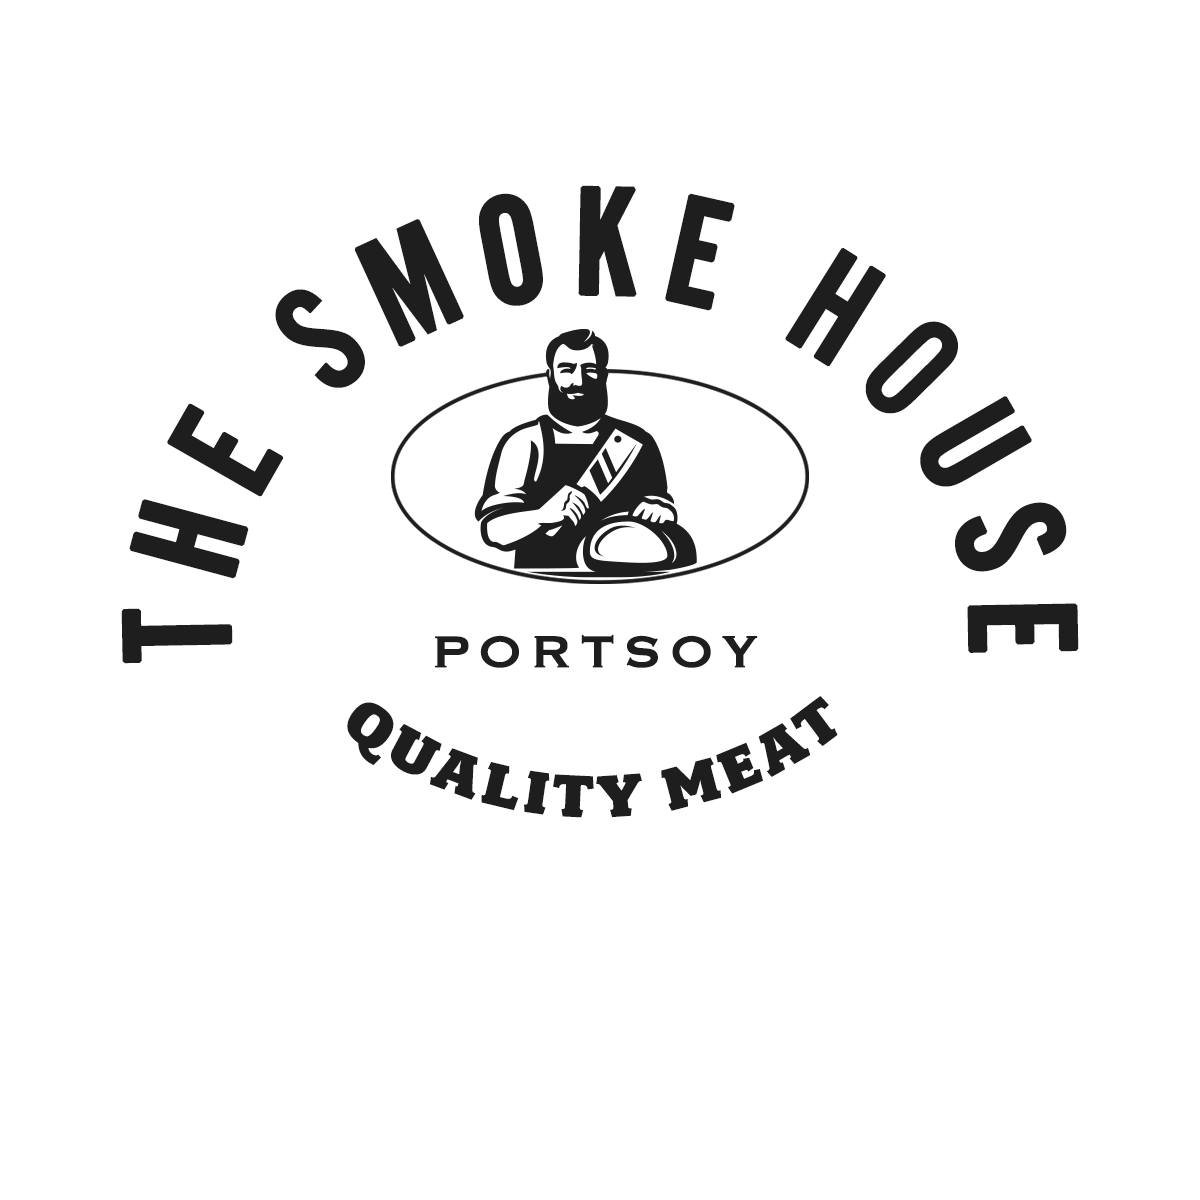 The Smoke House Portsoy